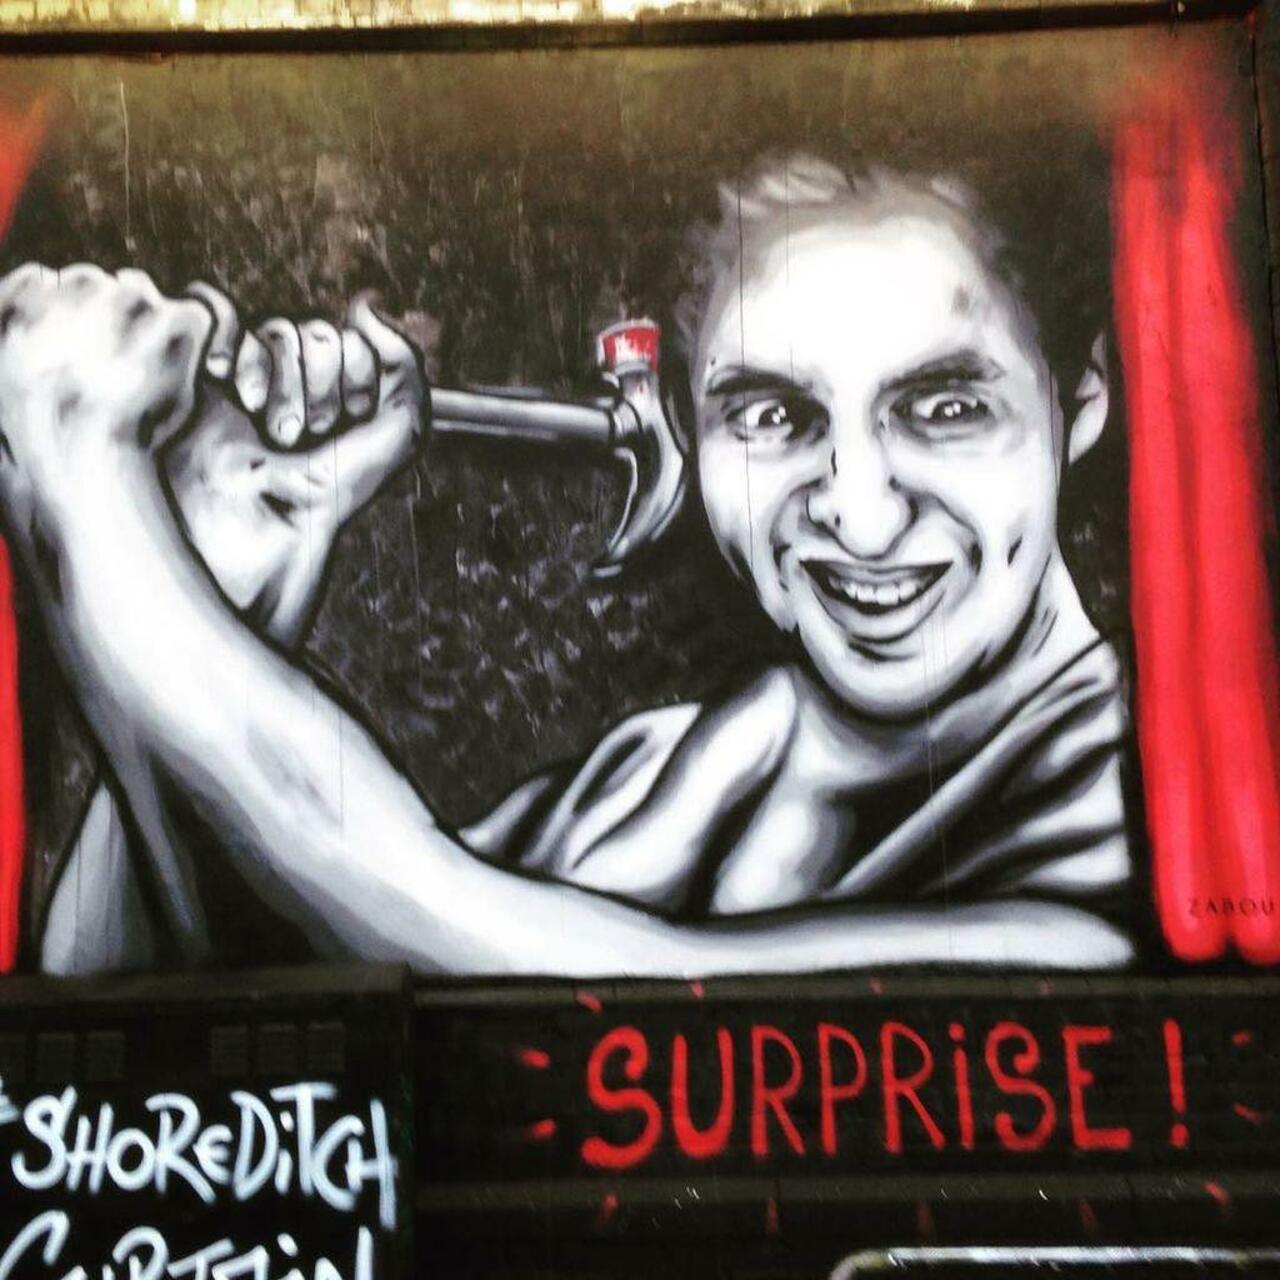 #streetart #streetartlondon #londonstreetart #urbanart #graffiti #zabou #shoreditchartwall #surprise #hammer #blood… http://t.co/tFnVhJueOR